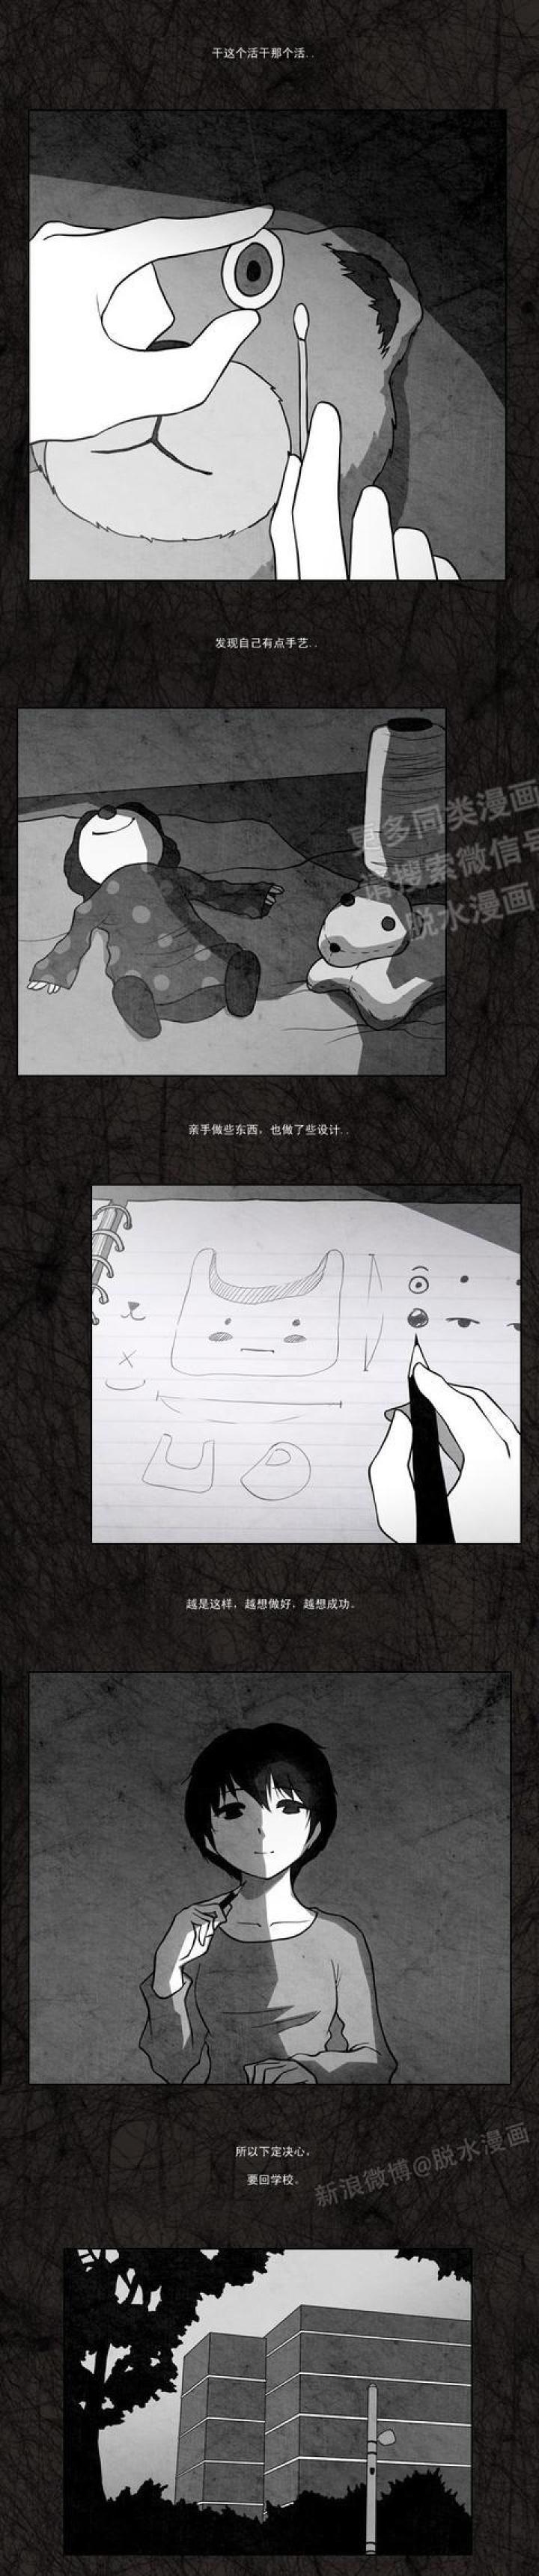 韩国短篇漫画 是应试教育的错吗-黑白漫话